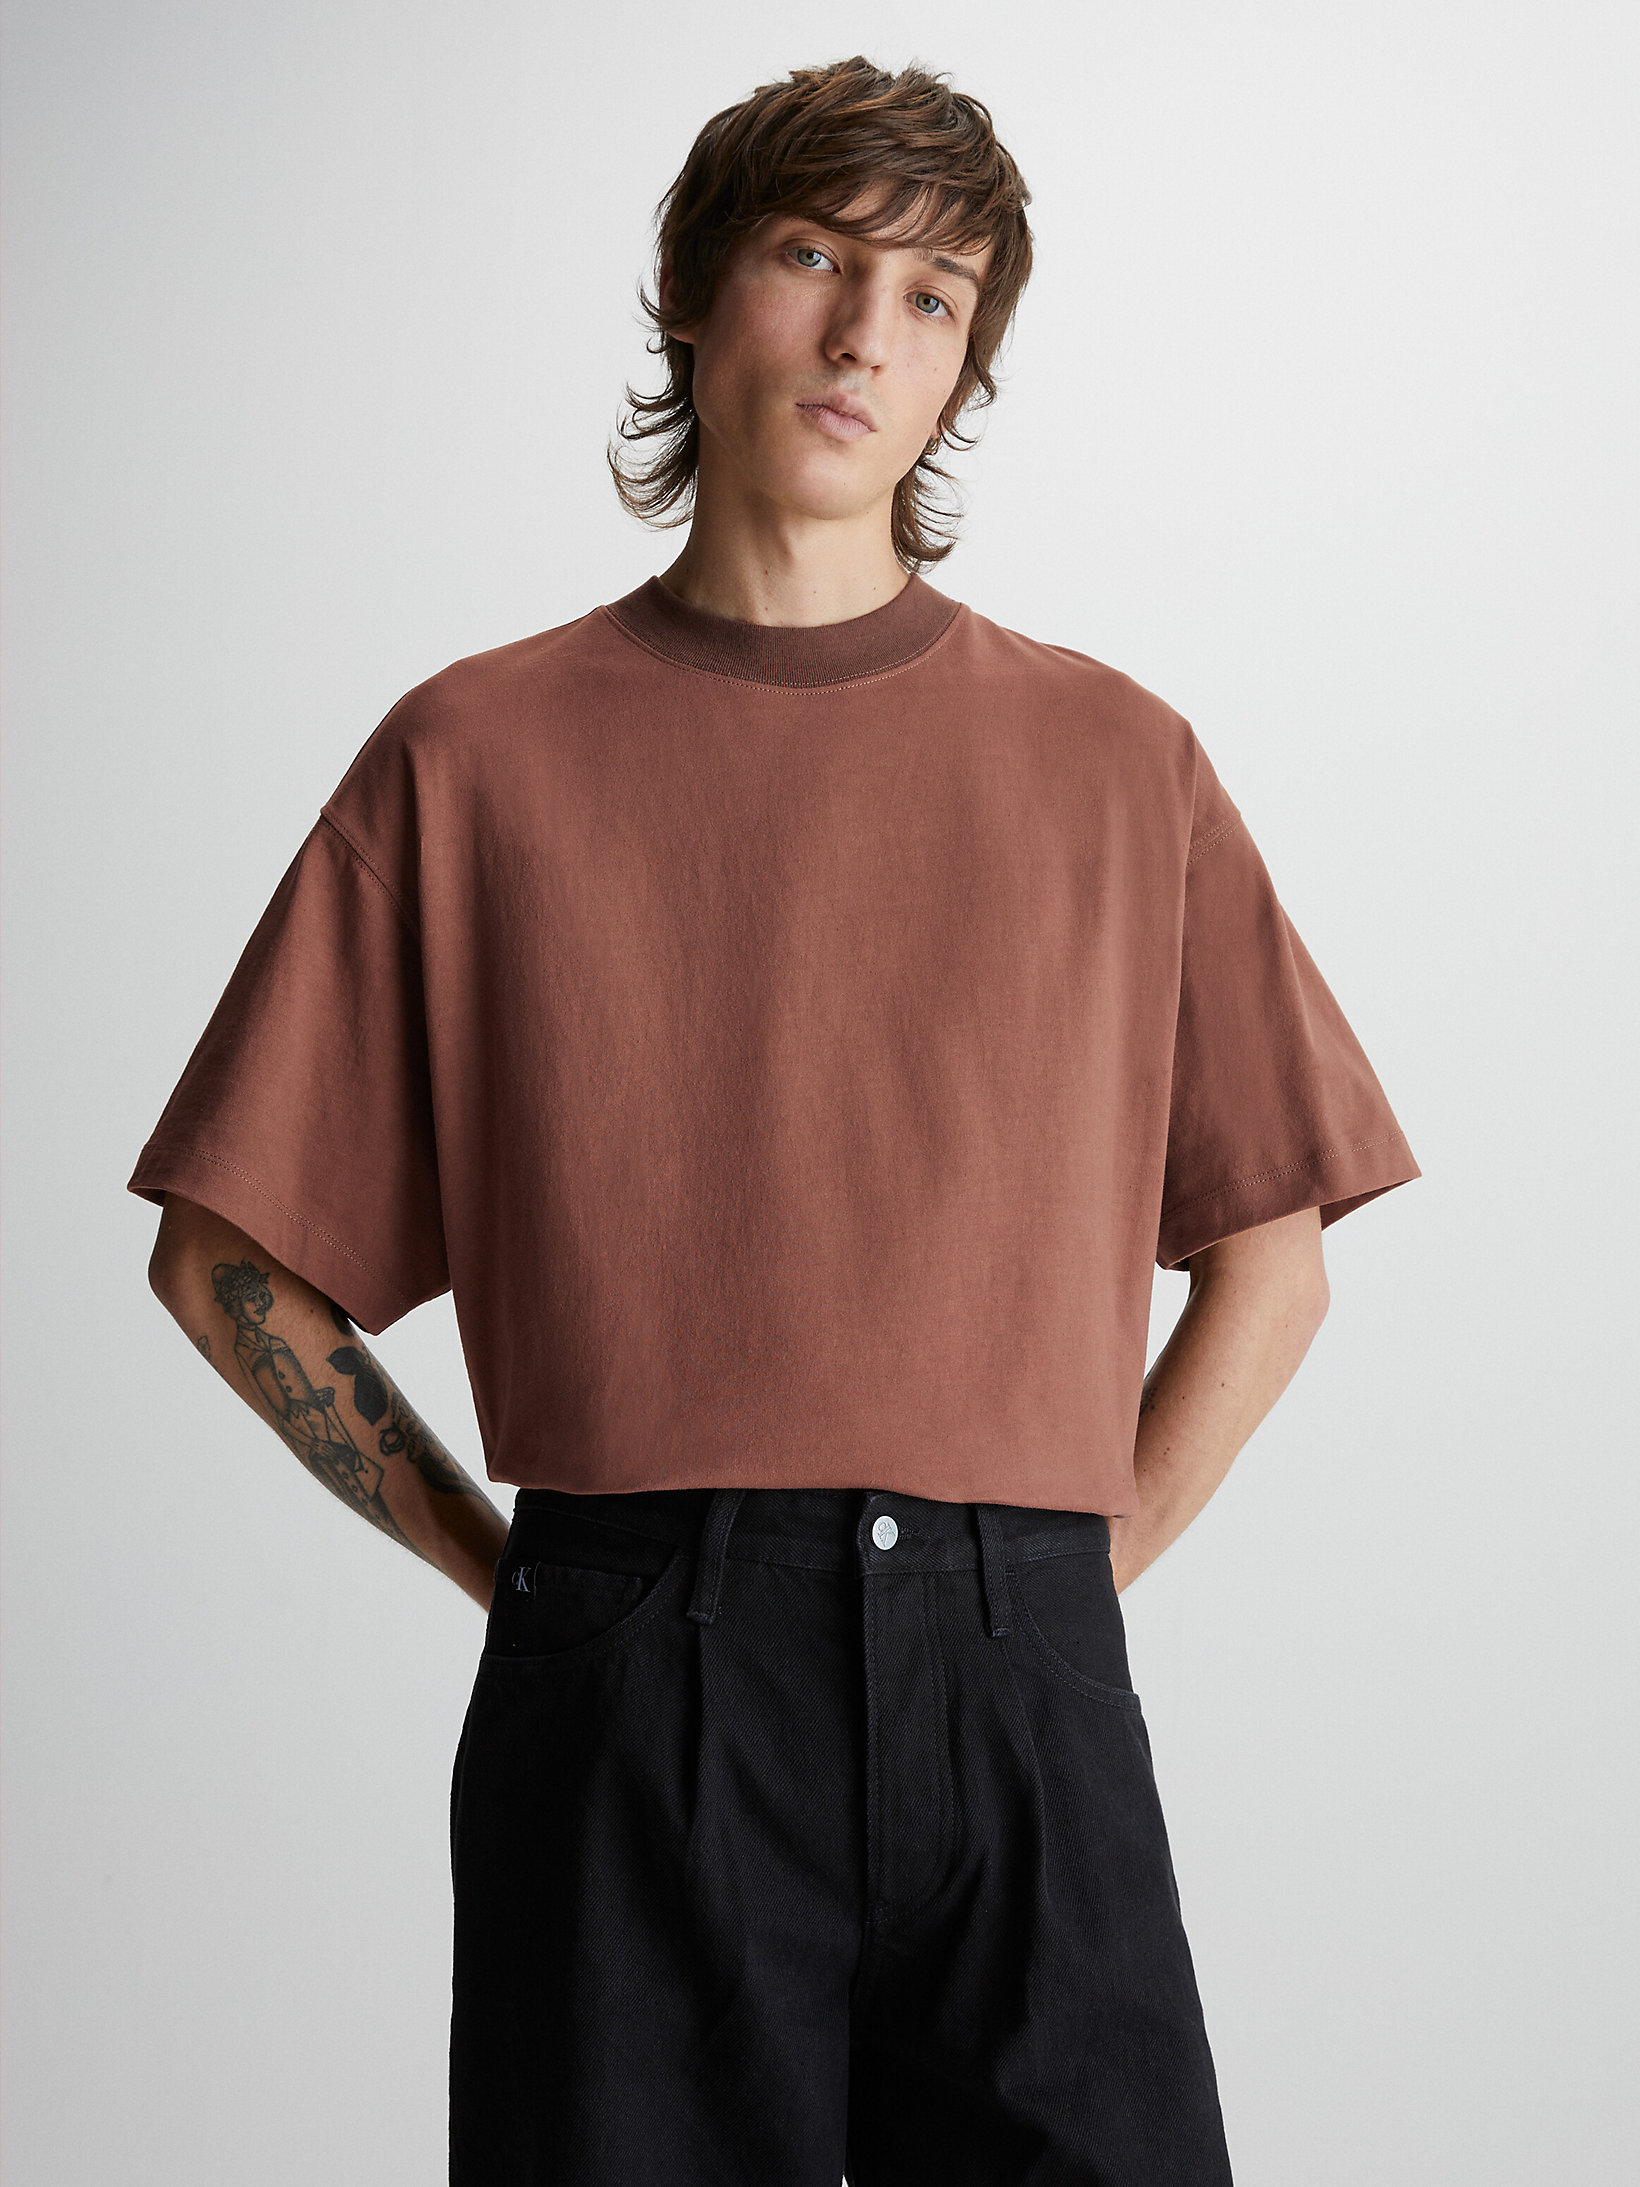 Pecan Nut > T-Shirt Unisex Oversize > undefined Unisex - Calvin Klein